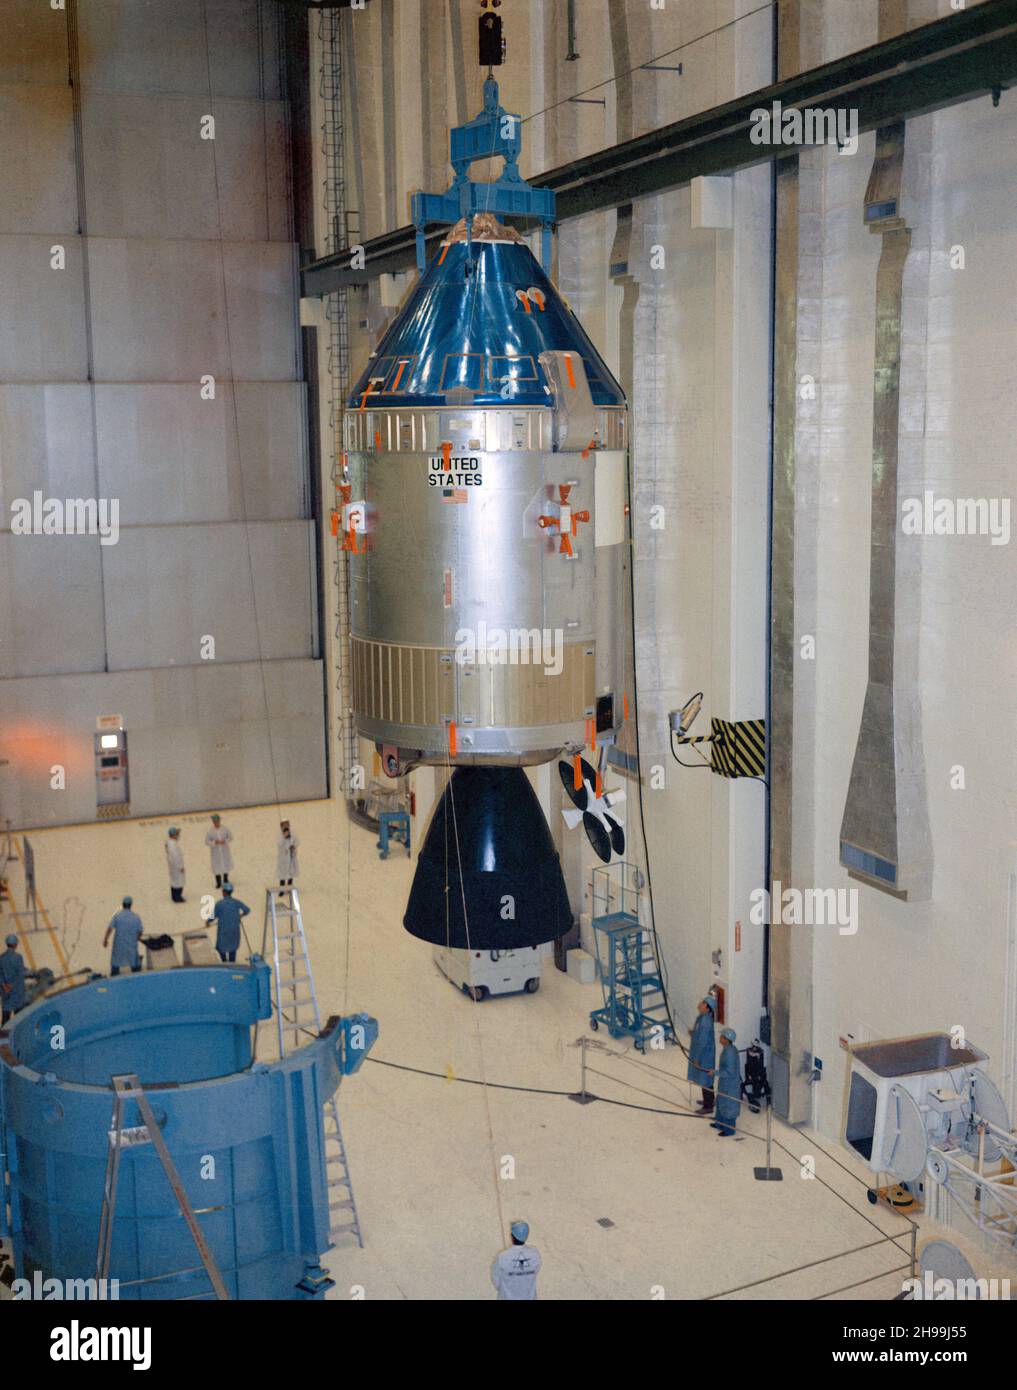 Innenansicht des bemannten Raumfahrts-Betriebsgebäudes des Kennedy Space Center, in dem die Apollo-Raumsonde 106/Command/Service Module zum integrierten Arbeitsplatz Nr. 1 bewegt wird, um sie mit dem Lunar Module Adapter (SLA) 13 des Raumfahrzeugs zu paaren. Die Raumsonde 106 wird auf der Weltraummission Apollo 10 (Lunar Module 4/Saturn 505) geflogen. Stockfoto